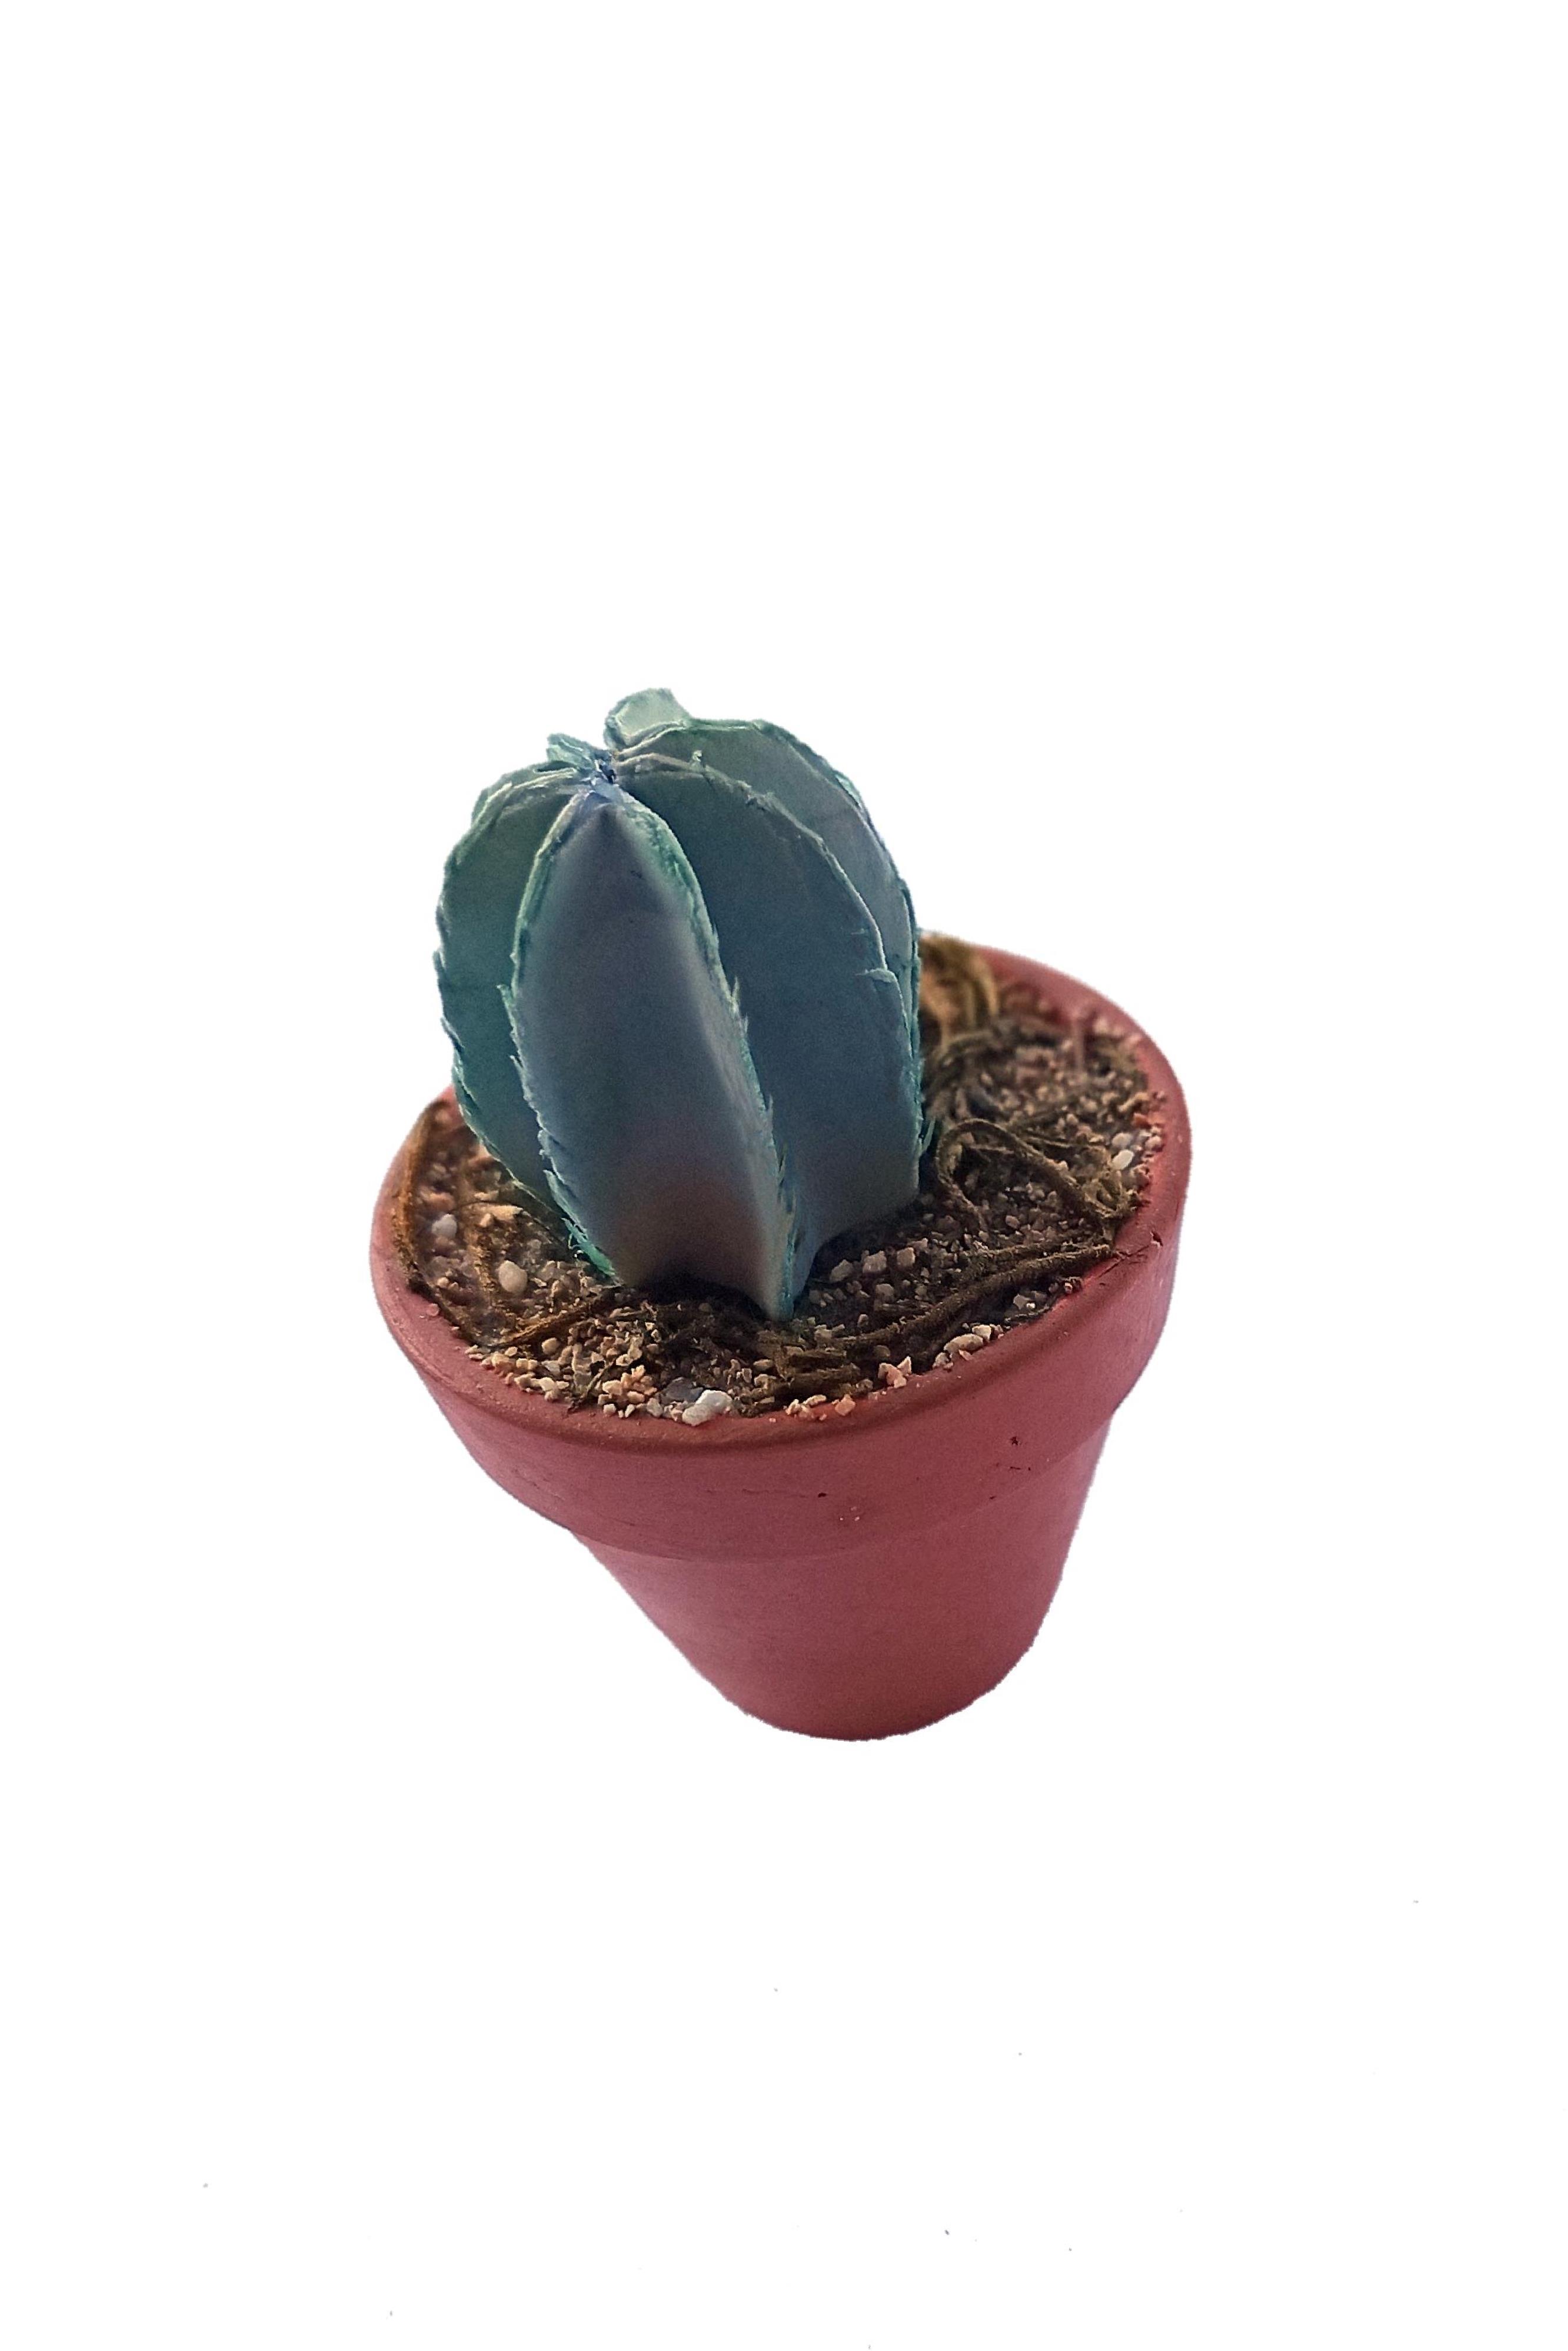 PG061 - Cactus